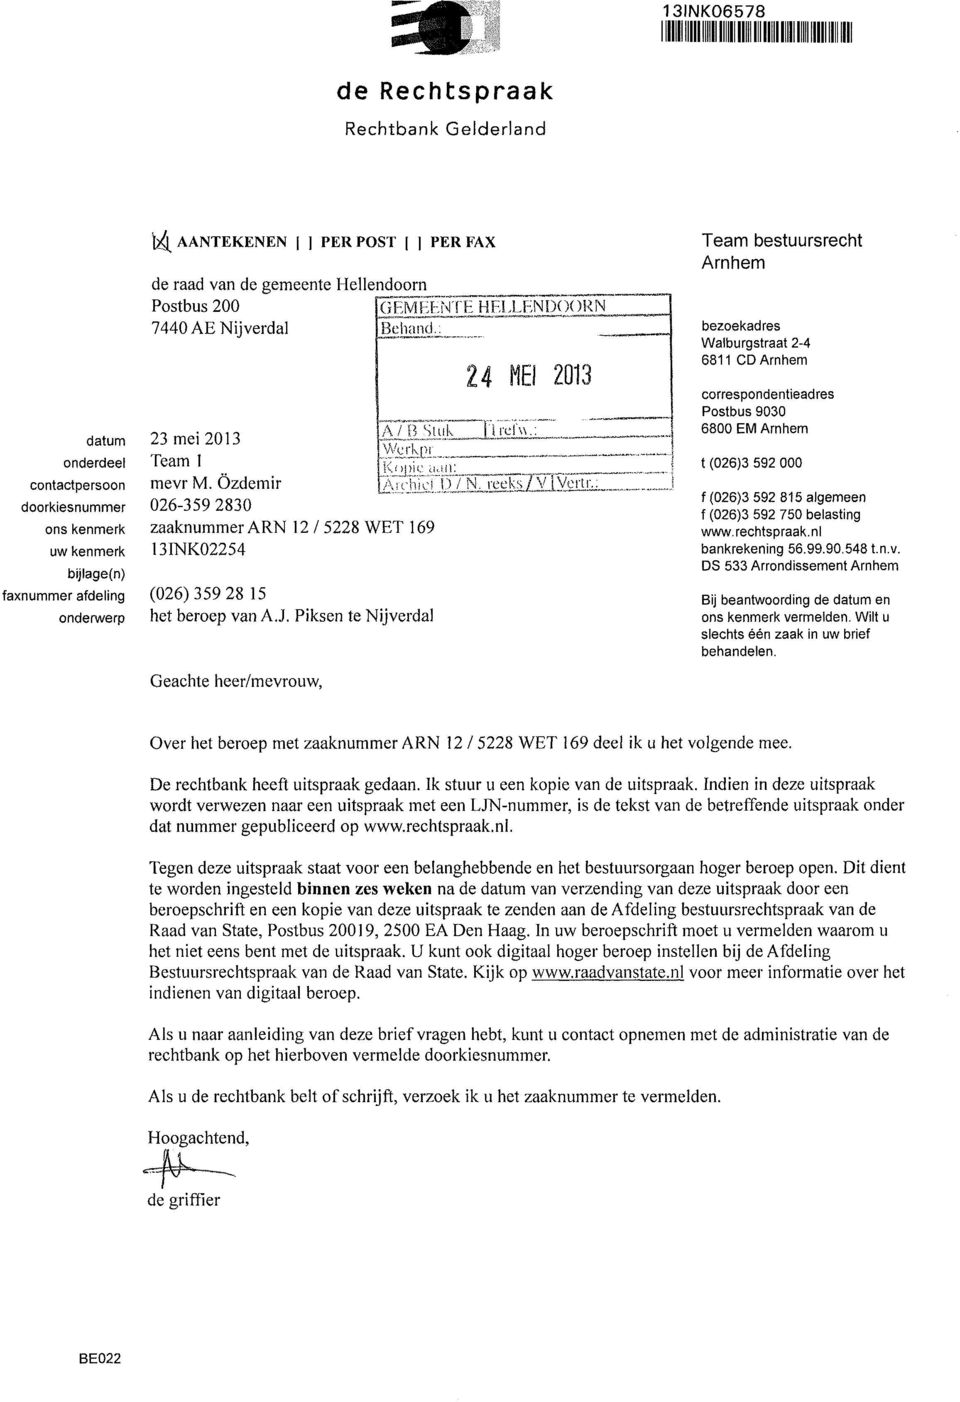 faxnummer afdeling (026) 359 28 15 onderwerp het beroep van A.J. Piksen te Nijverdal Geachte heer/mevrouw, MEI 2013 'į reľw.